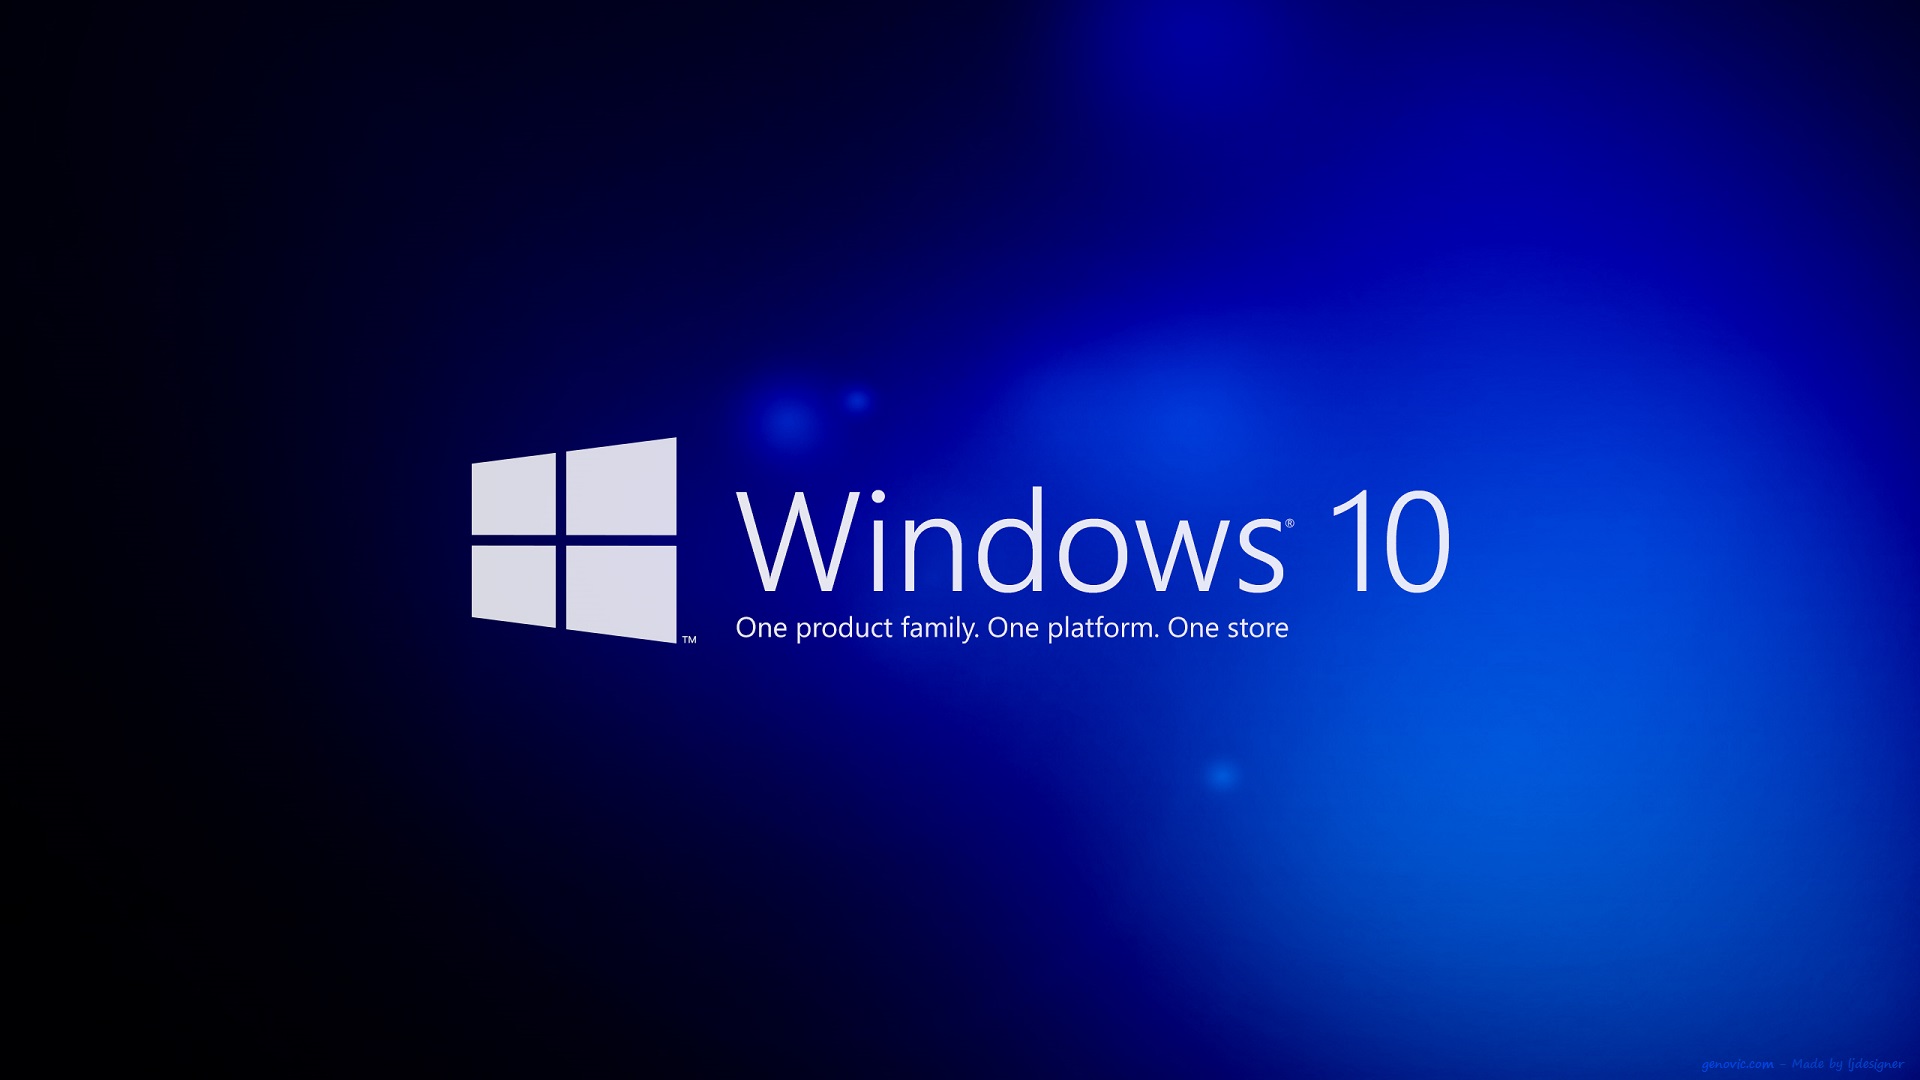 Thật tuyệt vời khi bạn có thể tùy chỉnh hình nền cho chiếc máy tính của mình với hình nền Windows 10 Pro độc đáo. Với nhiều tùy chọn phong phú, bạn có thể chọn lựa hình nền nào thích hợp nhất cho phong cách của bạn. Cùng tìm hiểu thêm về những hình nền Windows 10 Pro đẹp mắt này.